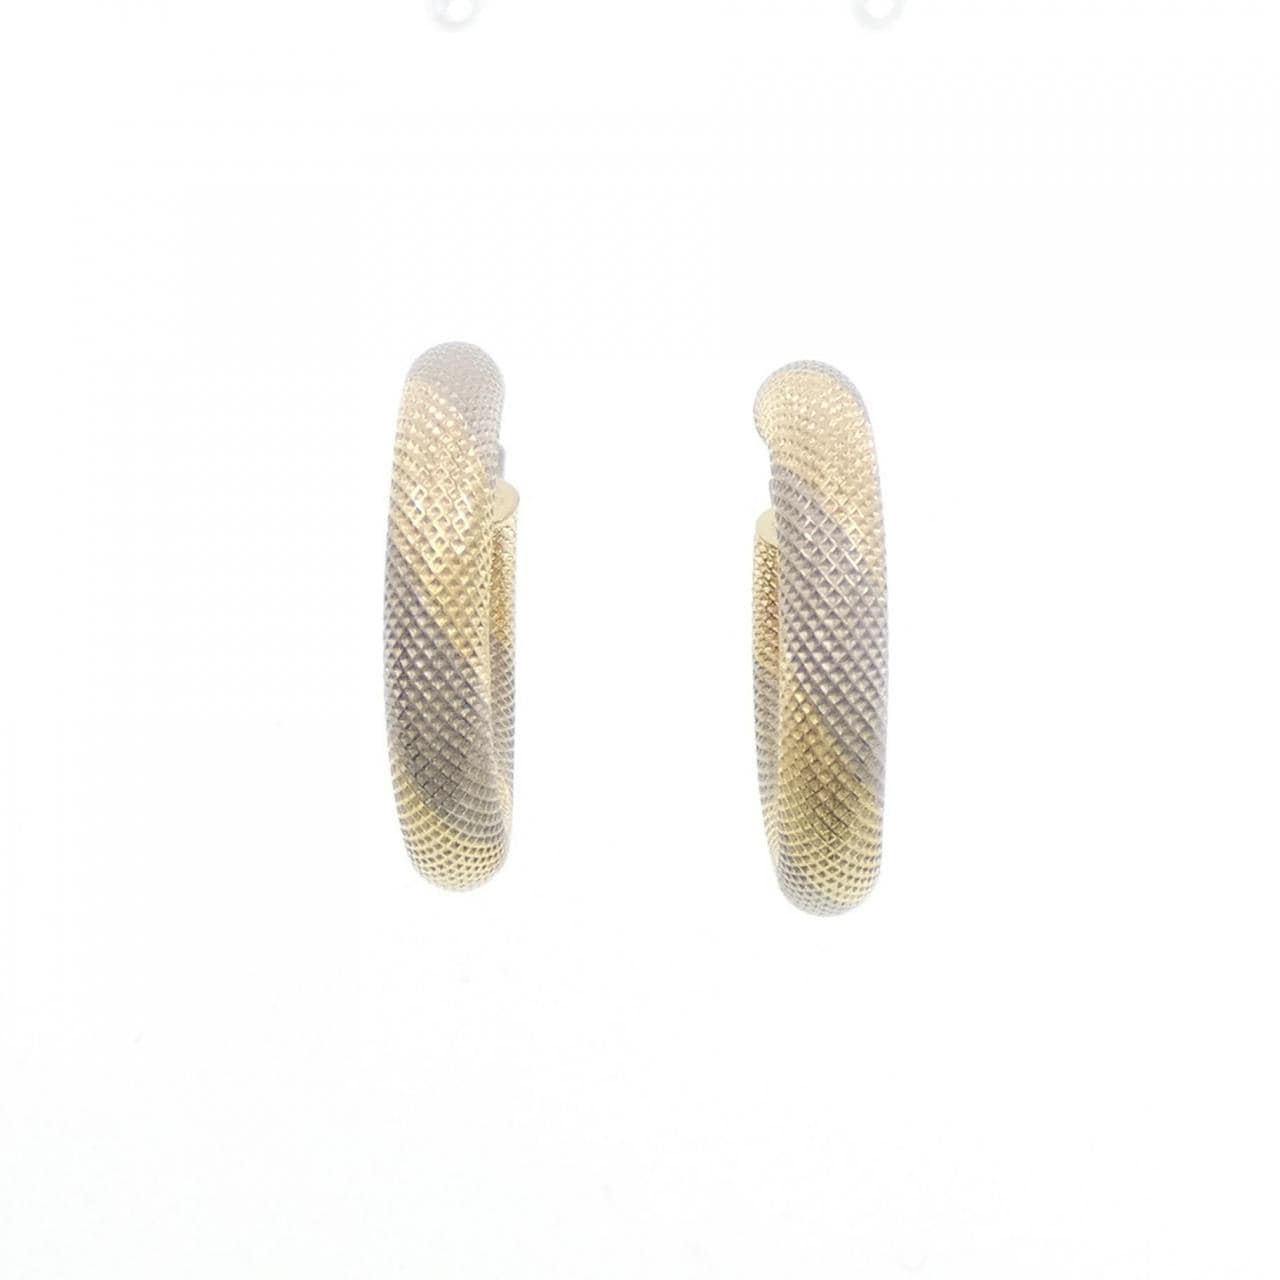 UNOAERRE 750YG/750WG Earrings